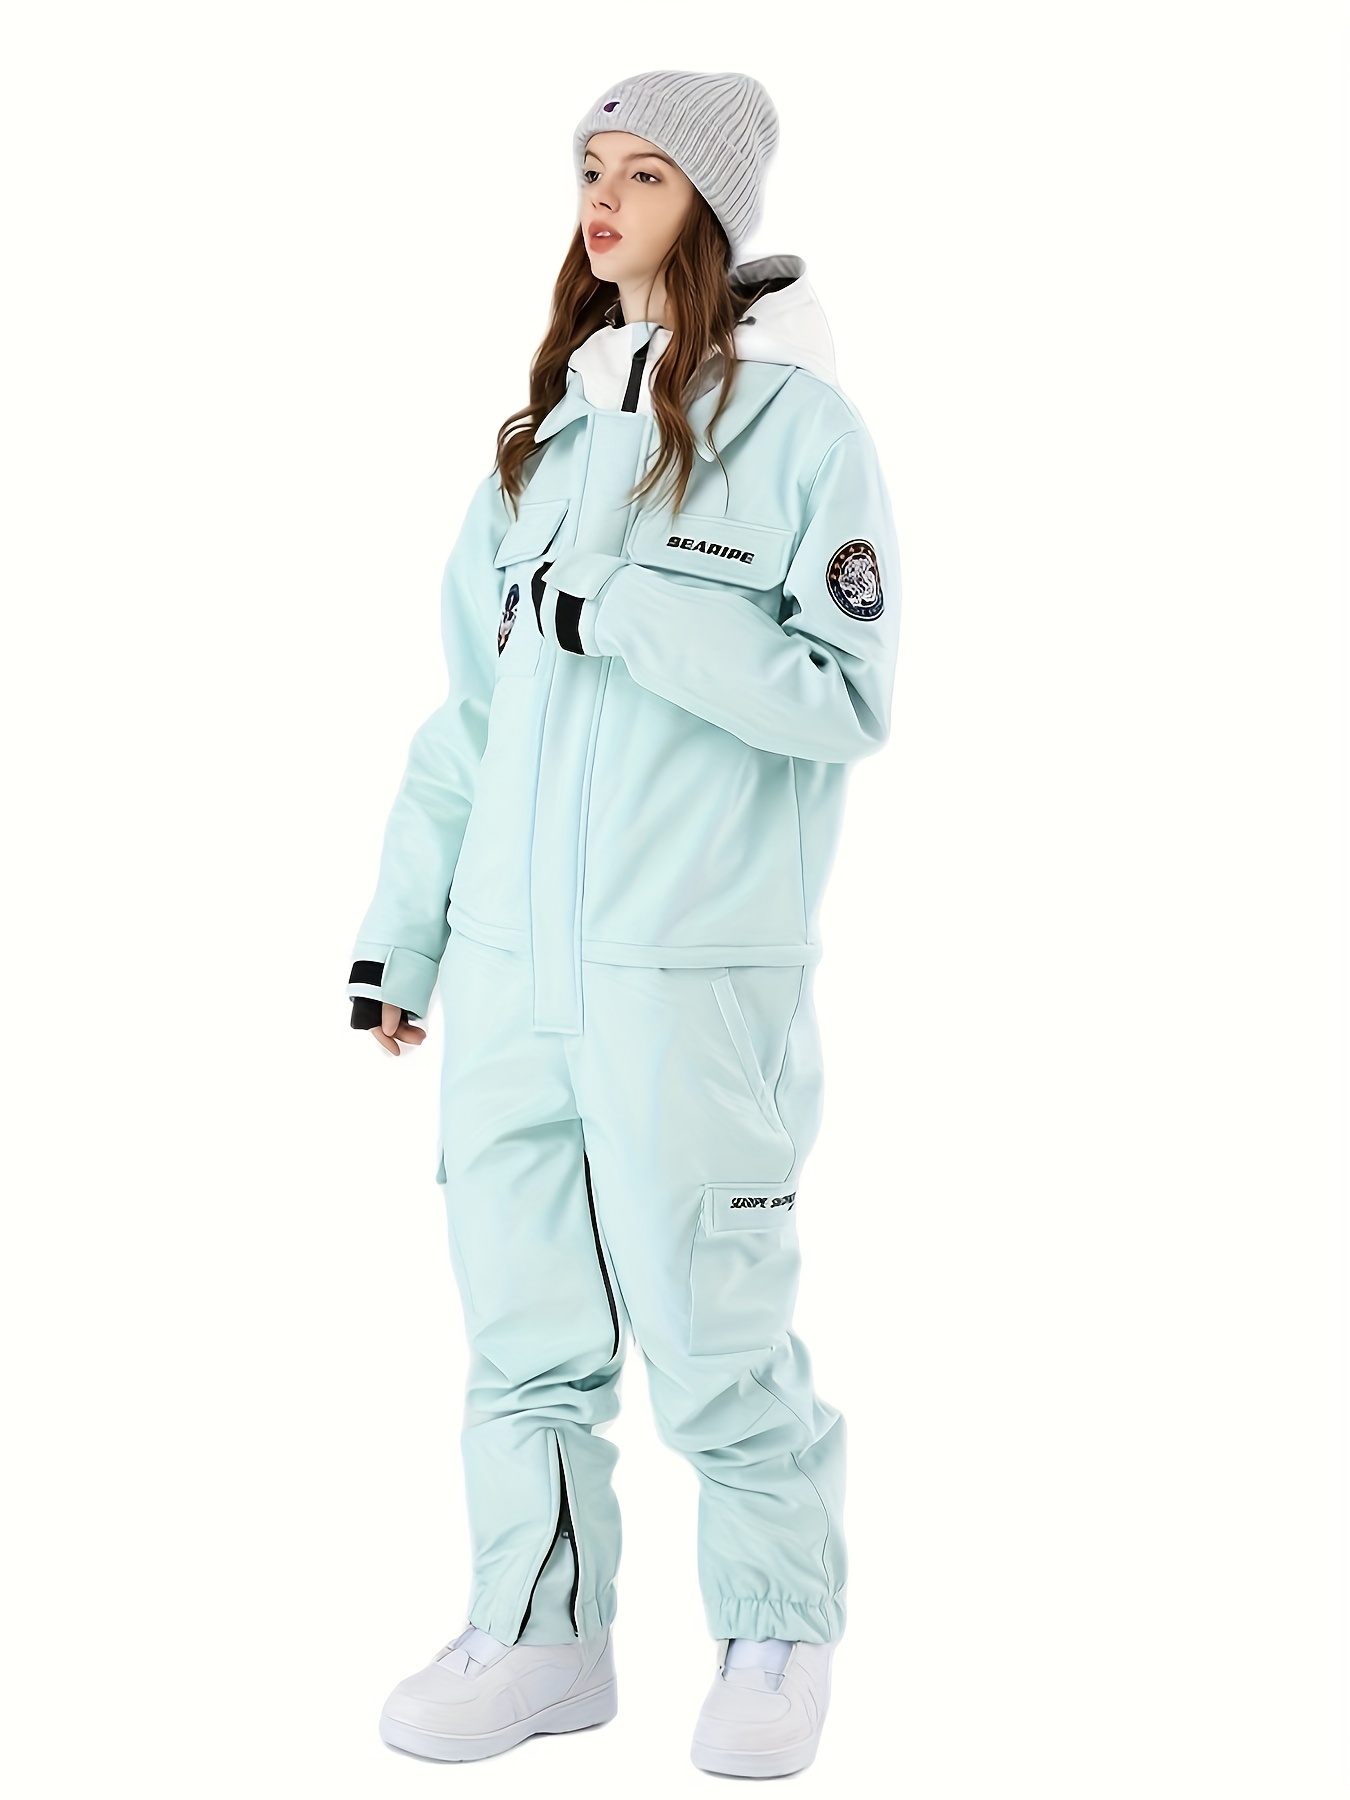  NVHXHW - Traje de esquí para mujer, para invierno, cálido,  resistente al viento, impermeable, chaqueta de esquí y pantalones para mujer,  traje de snowboard para esquí, color rosa y nieve (color